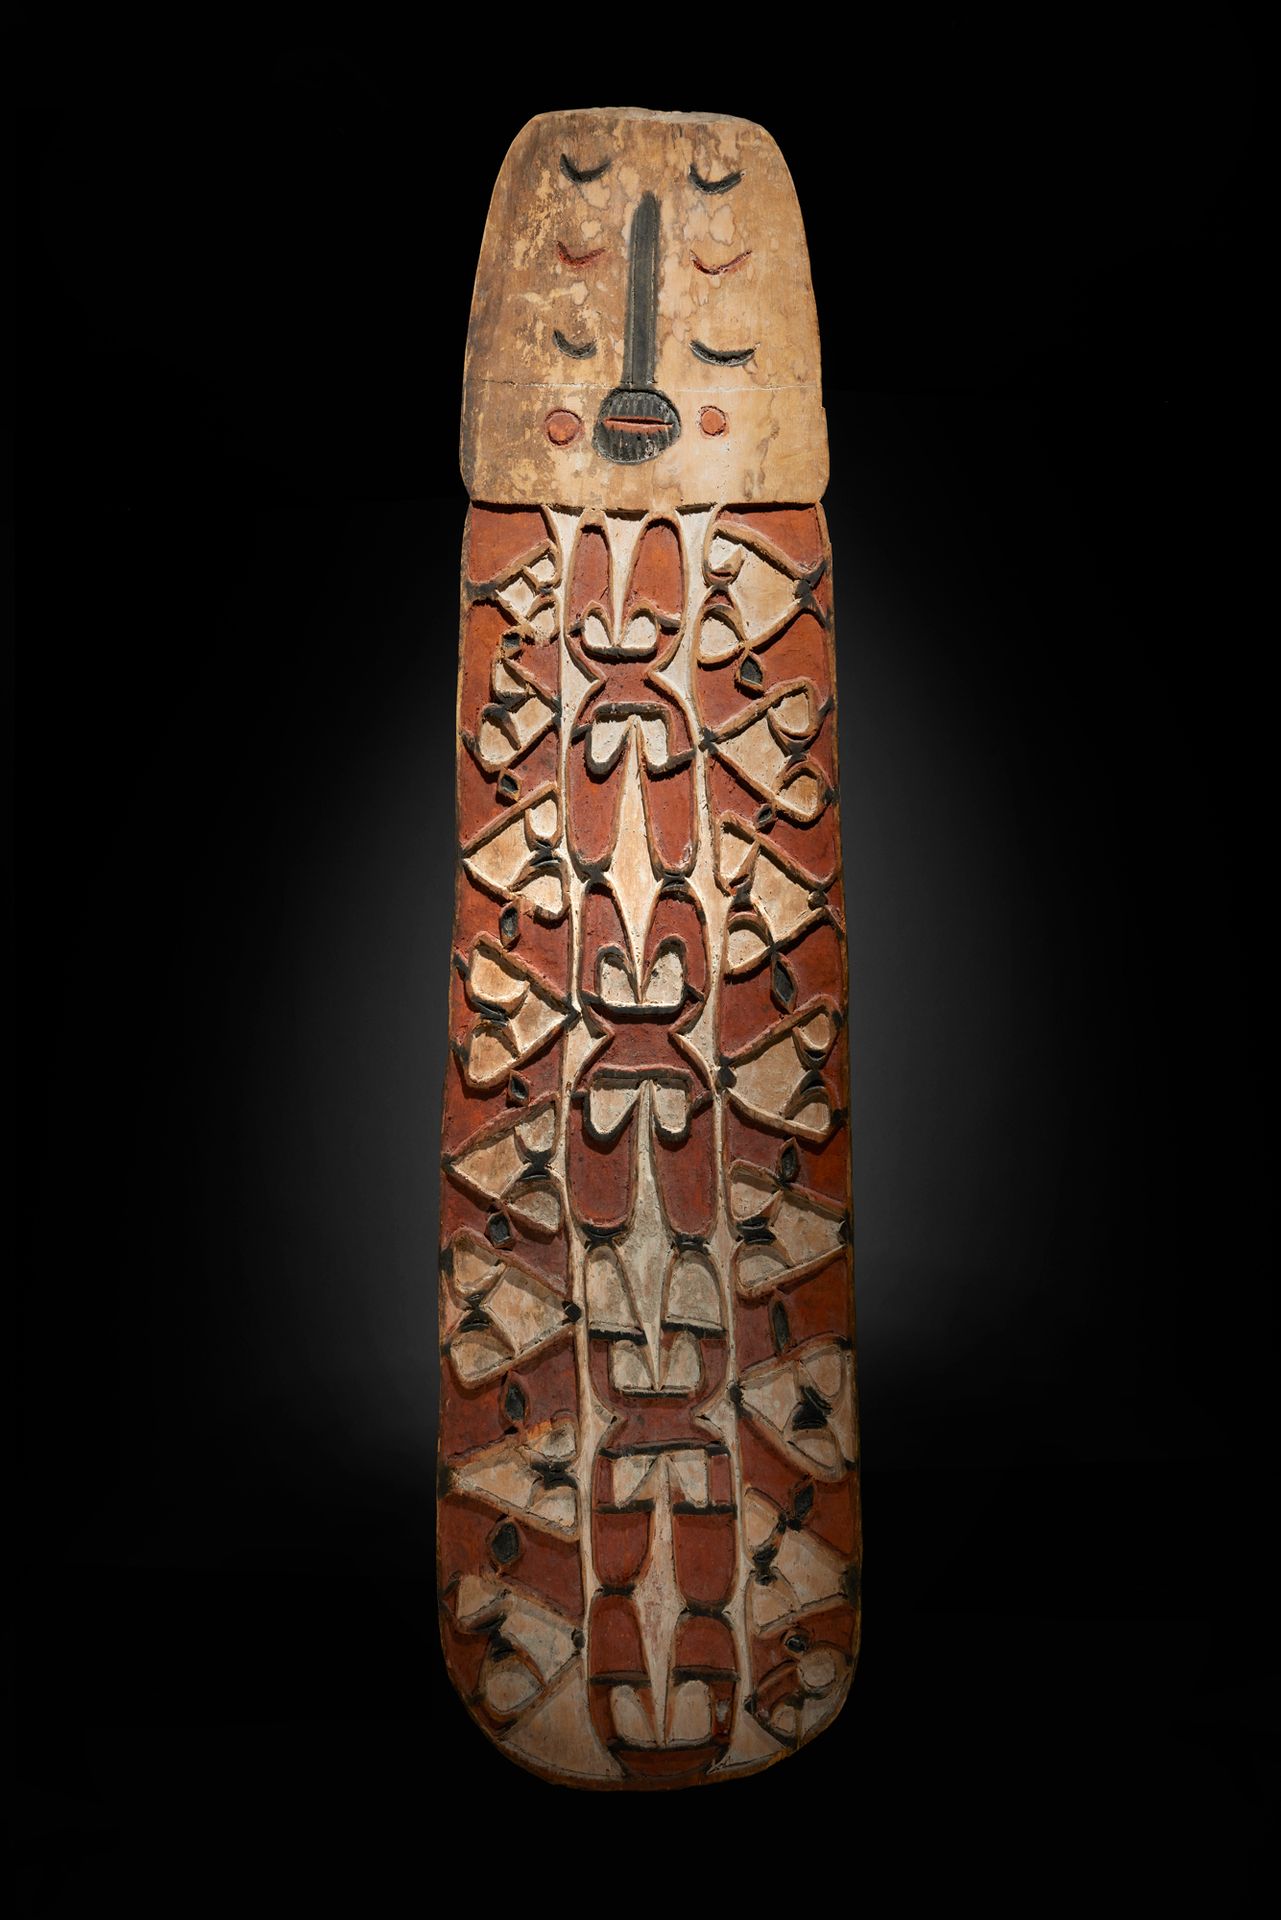 Null 阿斯玛特舞蹈盾牌

新几内亚

木材和颜料

H.150 cm - L. 37 cm



大盾牌的上部有一个面孔，并有经典风格的卷轴和几何图案的装饰&hellip;